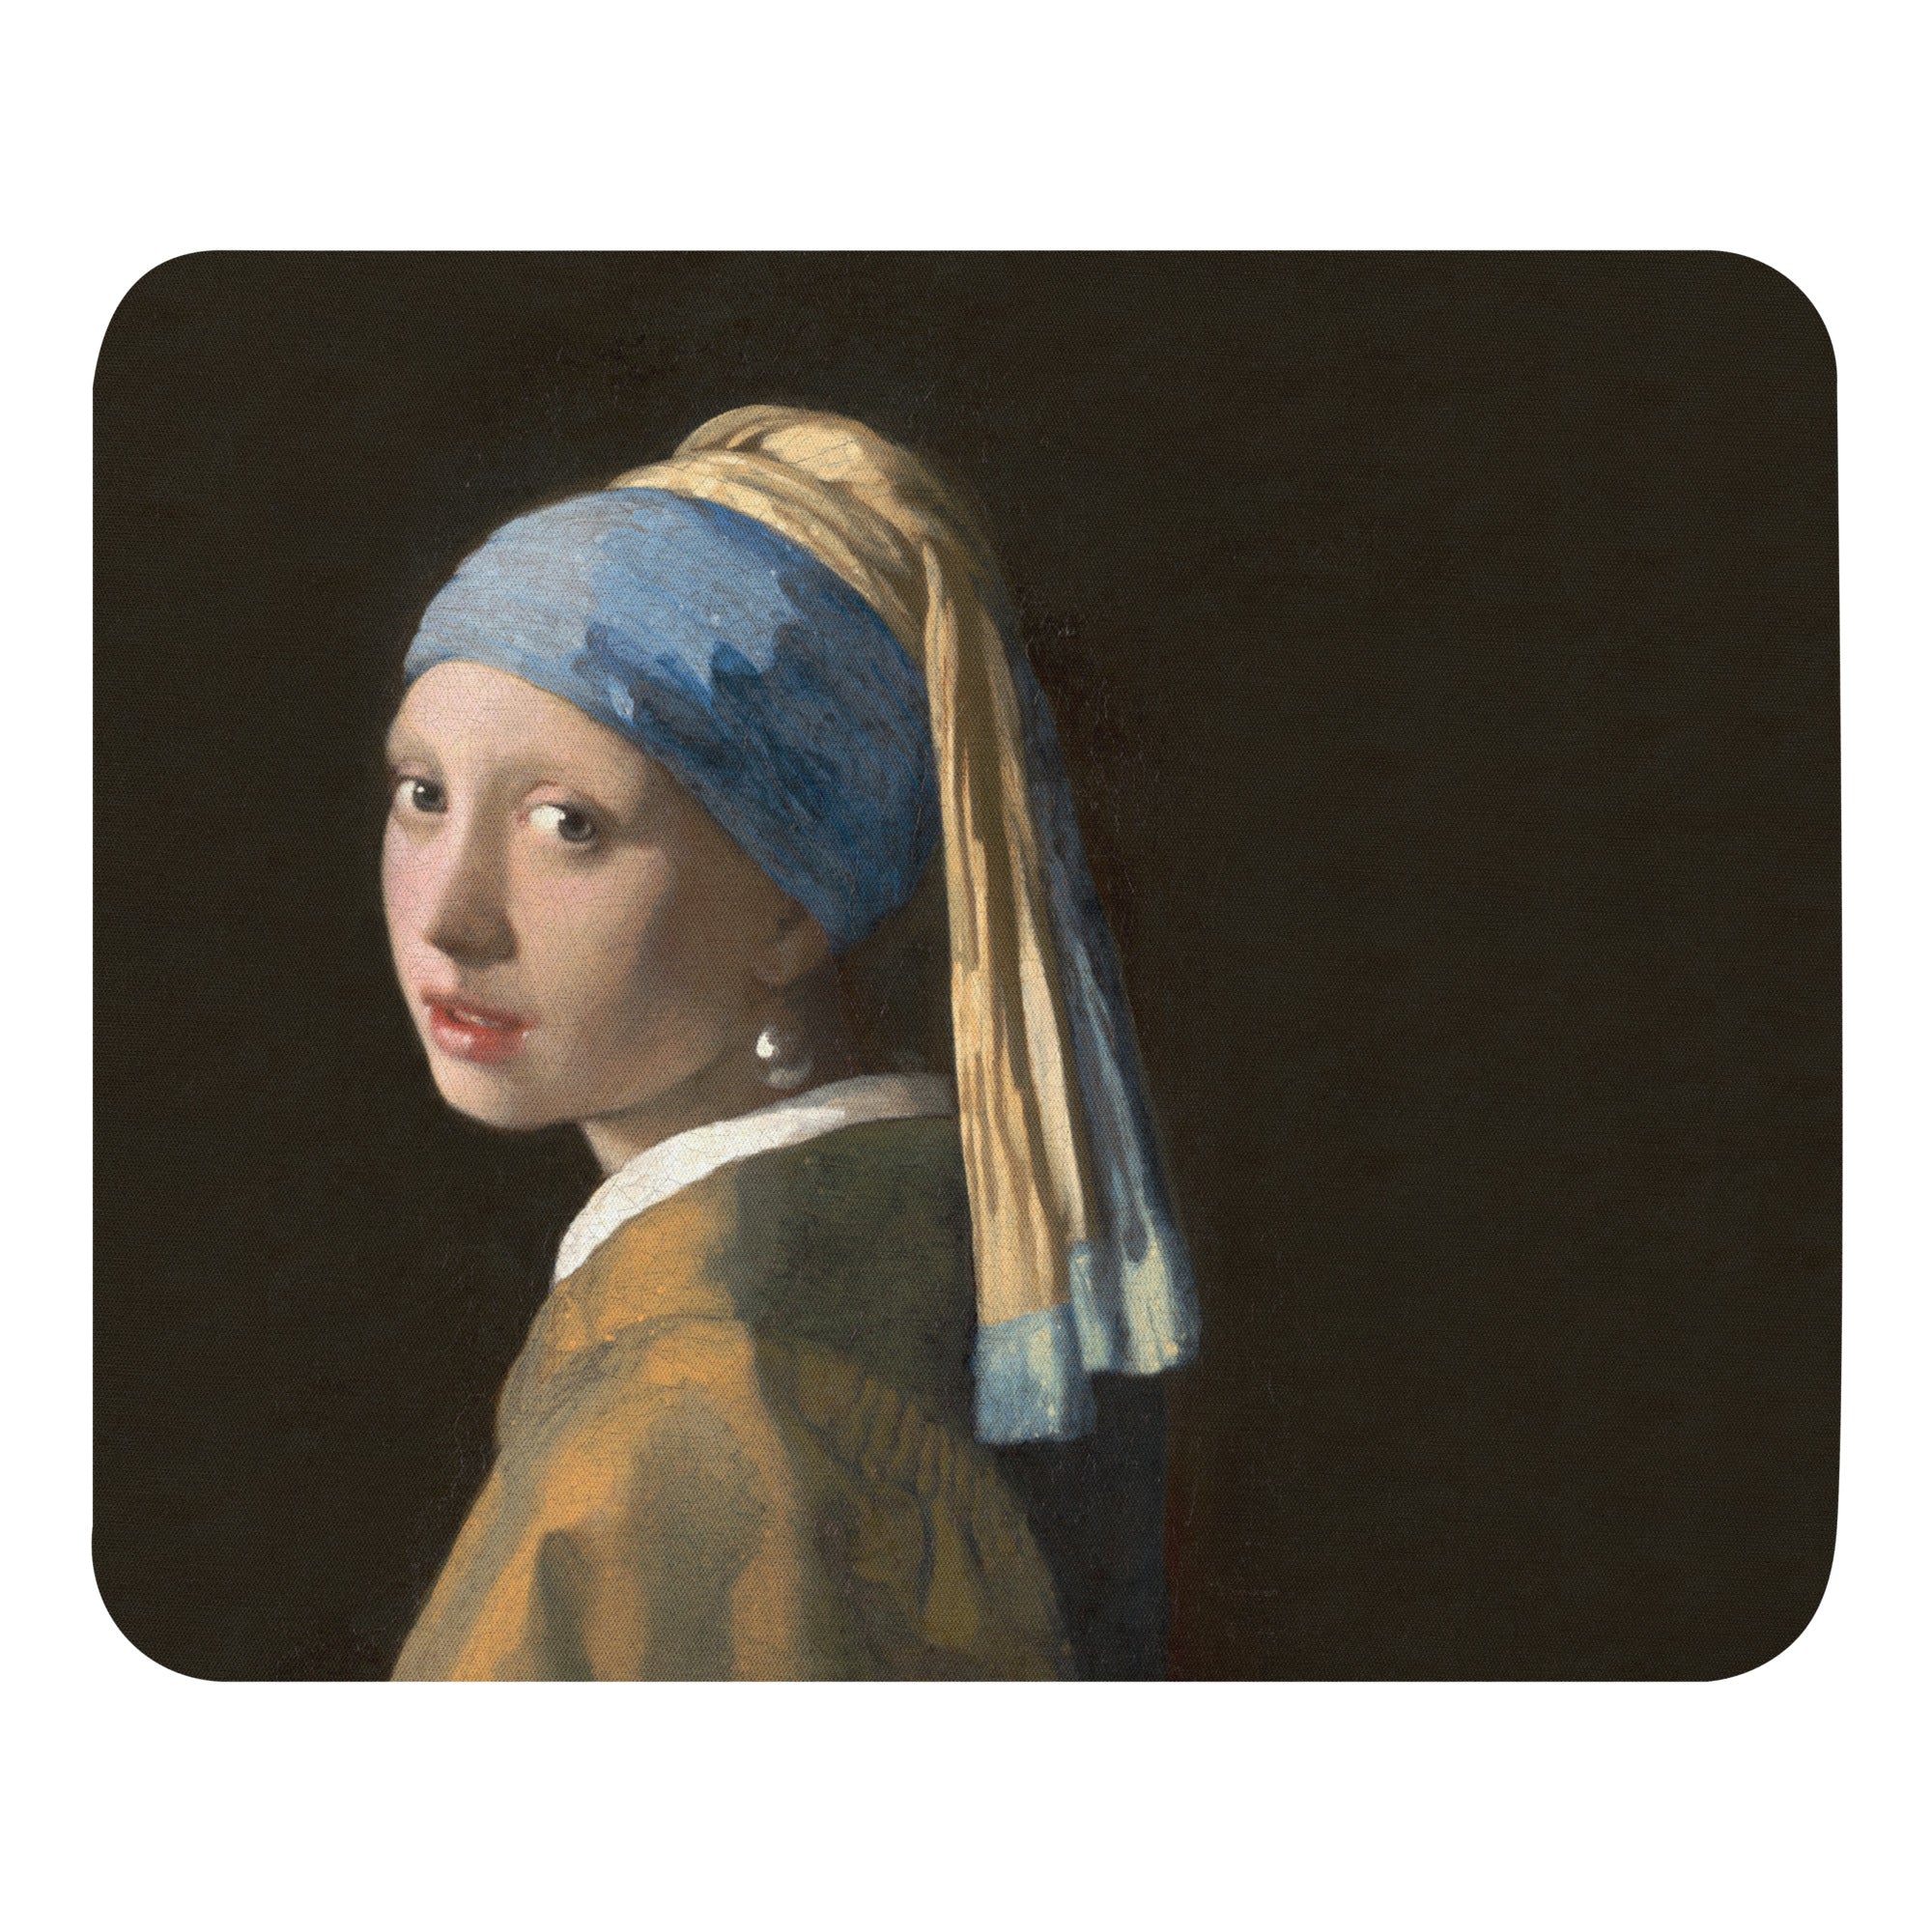 Mauspad „Mädchen mit Perlenohrgehänge“ von Johannes Vermeer, berühmtes Gemälde, Premium-Kunst-Mauspad